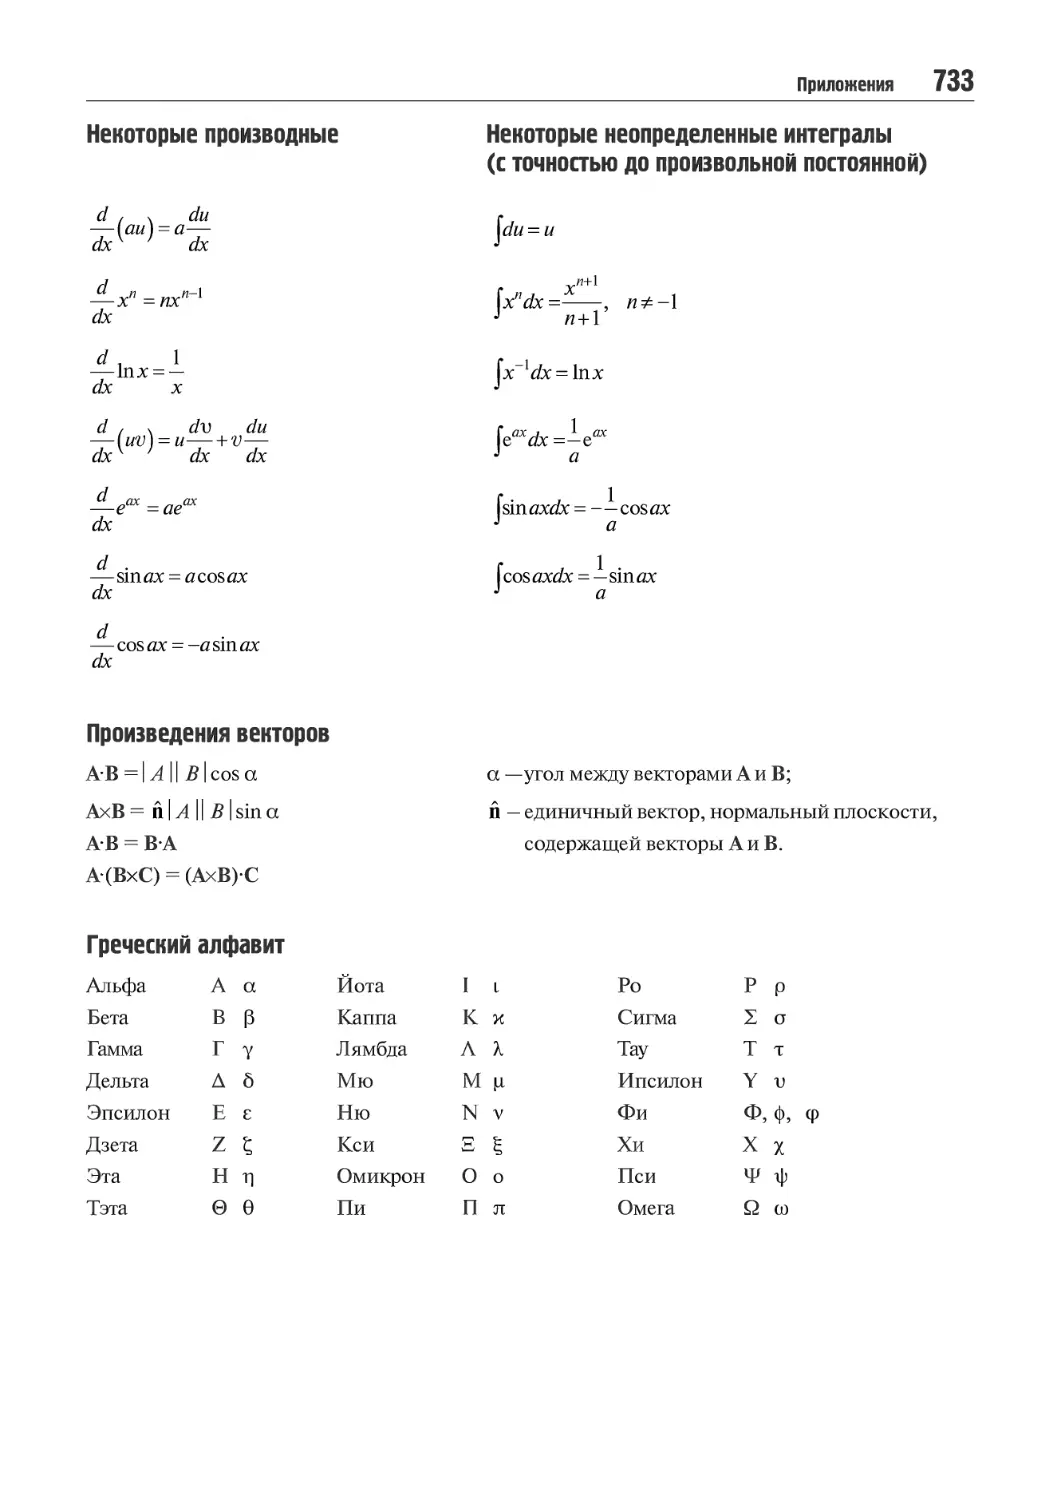 Некоторые производные
Произведения векторов
Греческий алфавит